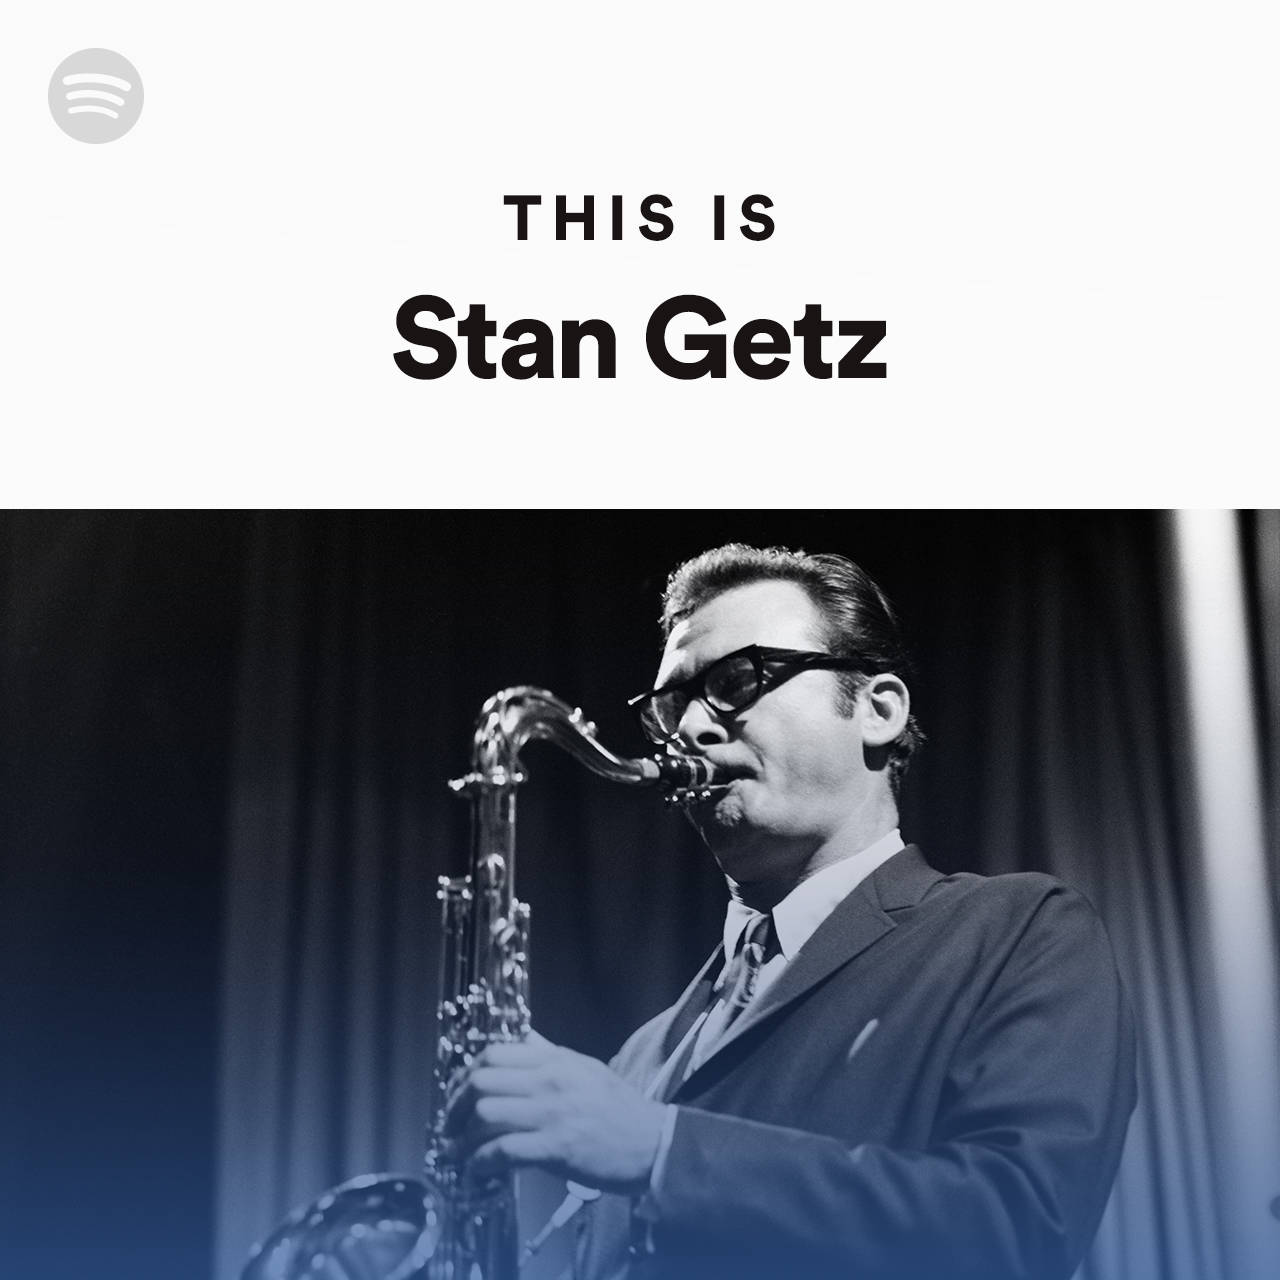 Dethär Är Omslaget Till Stan Getz Spotify Album. Wallpaper